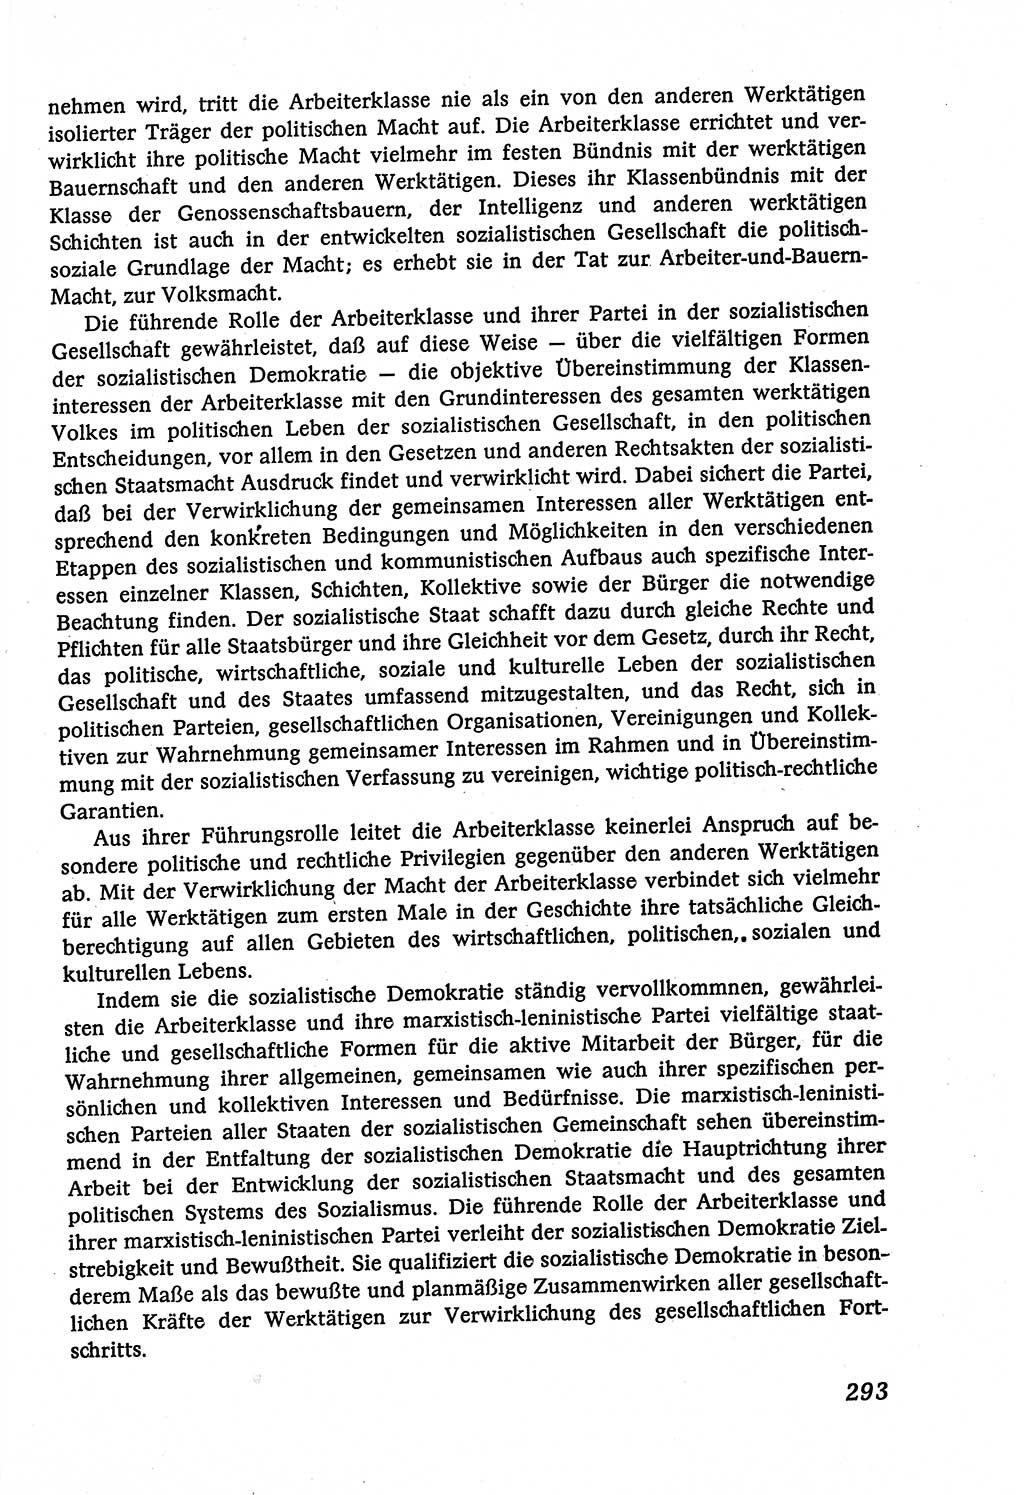 Marxistisch-leninistische (ML) Staats- und Rechtstheorie [Deutsche Demokratische Republik (DDR)], Lehrbuch 1980, Seite 293 (ML St.-R.-Th. DDR Lb. 1980, S. 293)